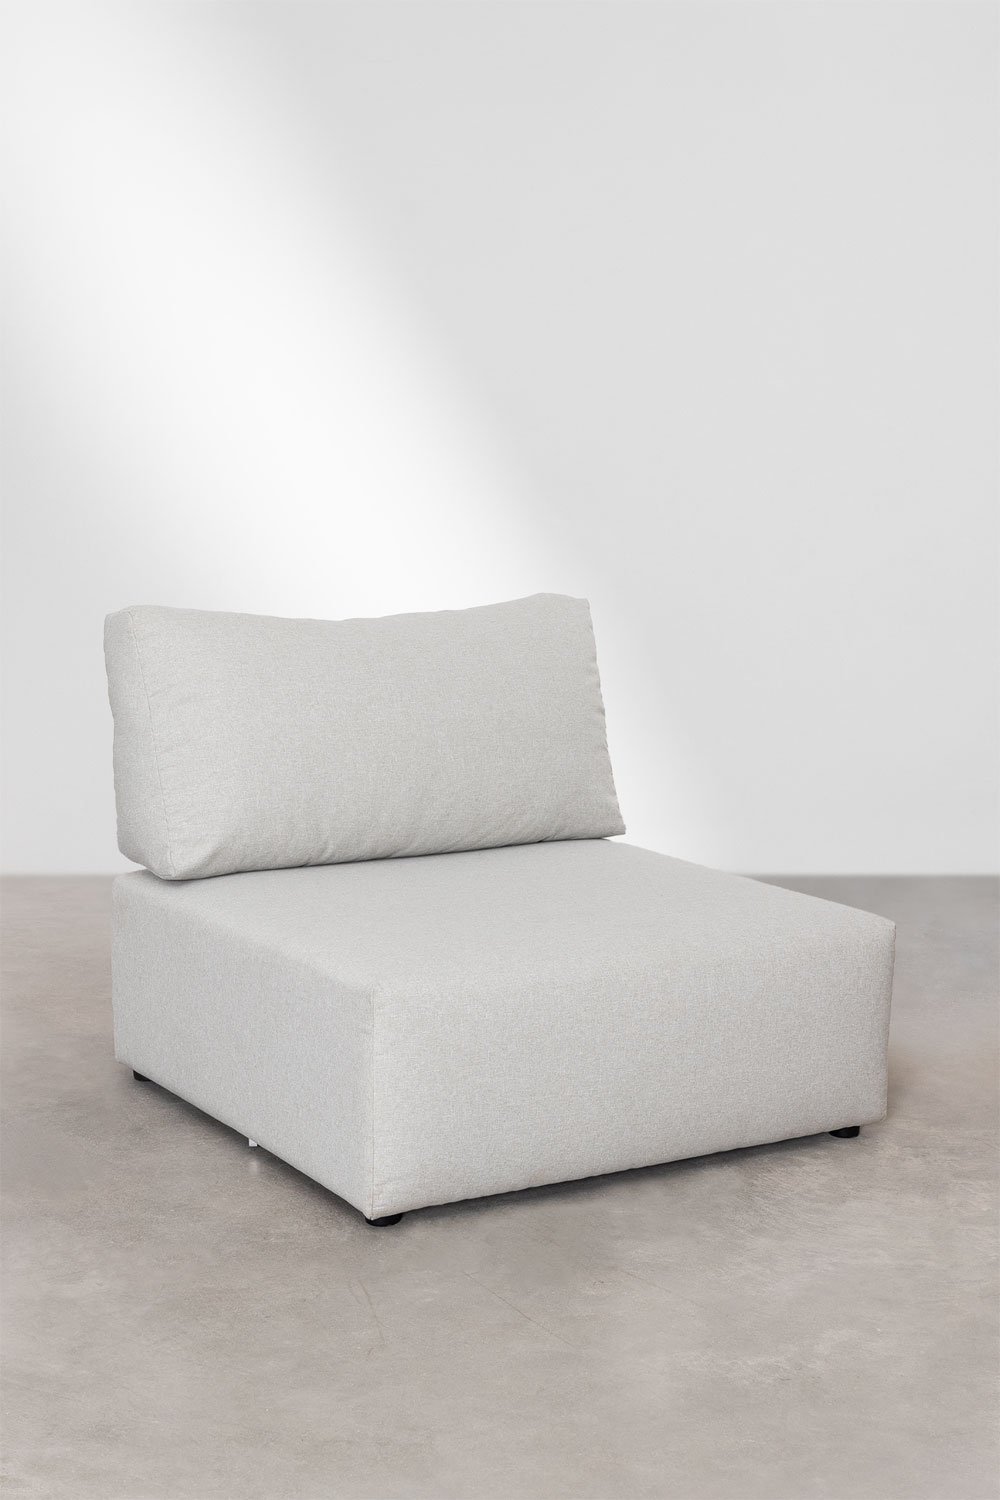 Moduli per divani in tela Kata, immagine della galleria 1